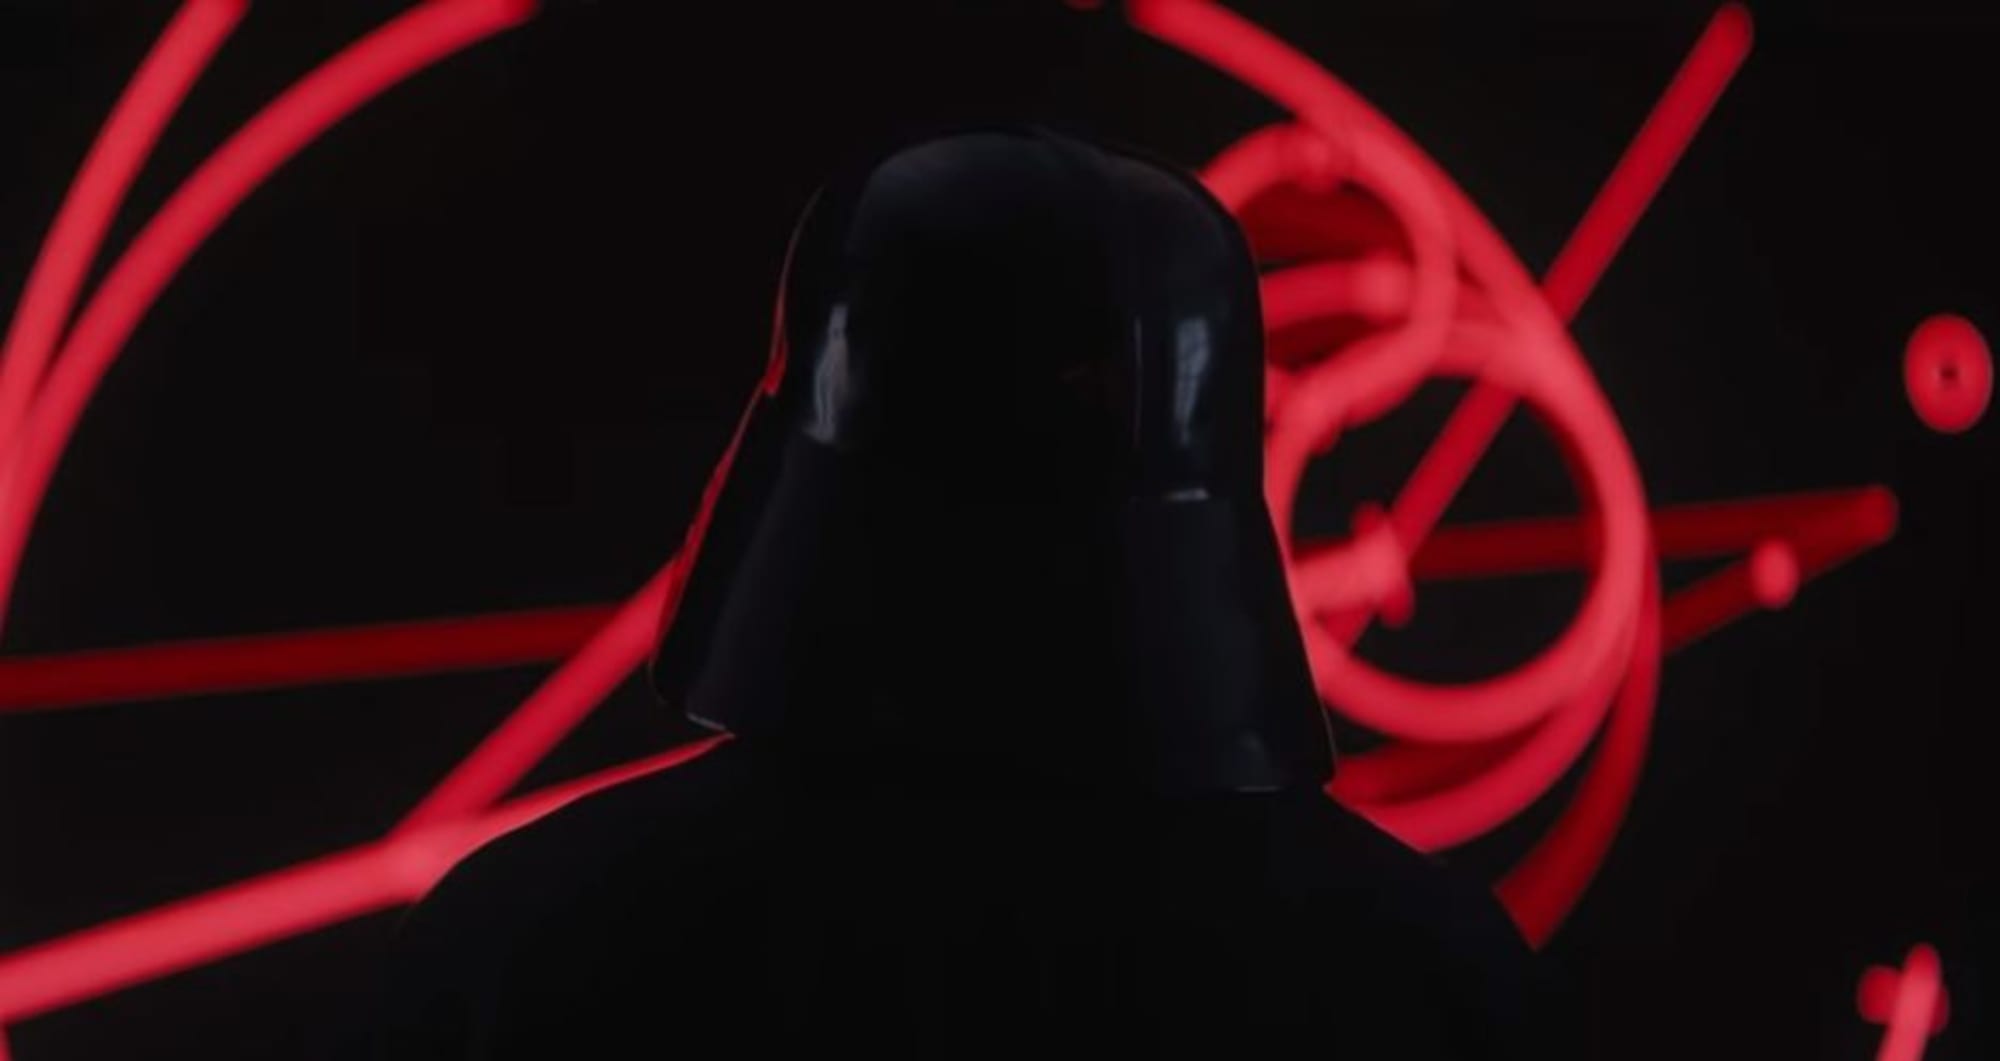 geschiedenis Melodramatisch Schaap Rogue One: When did Darth Vader show up?